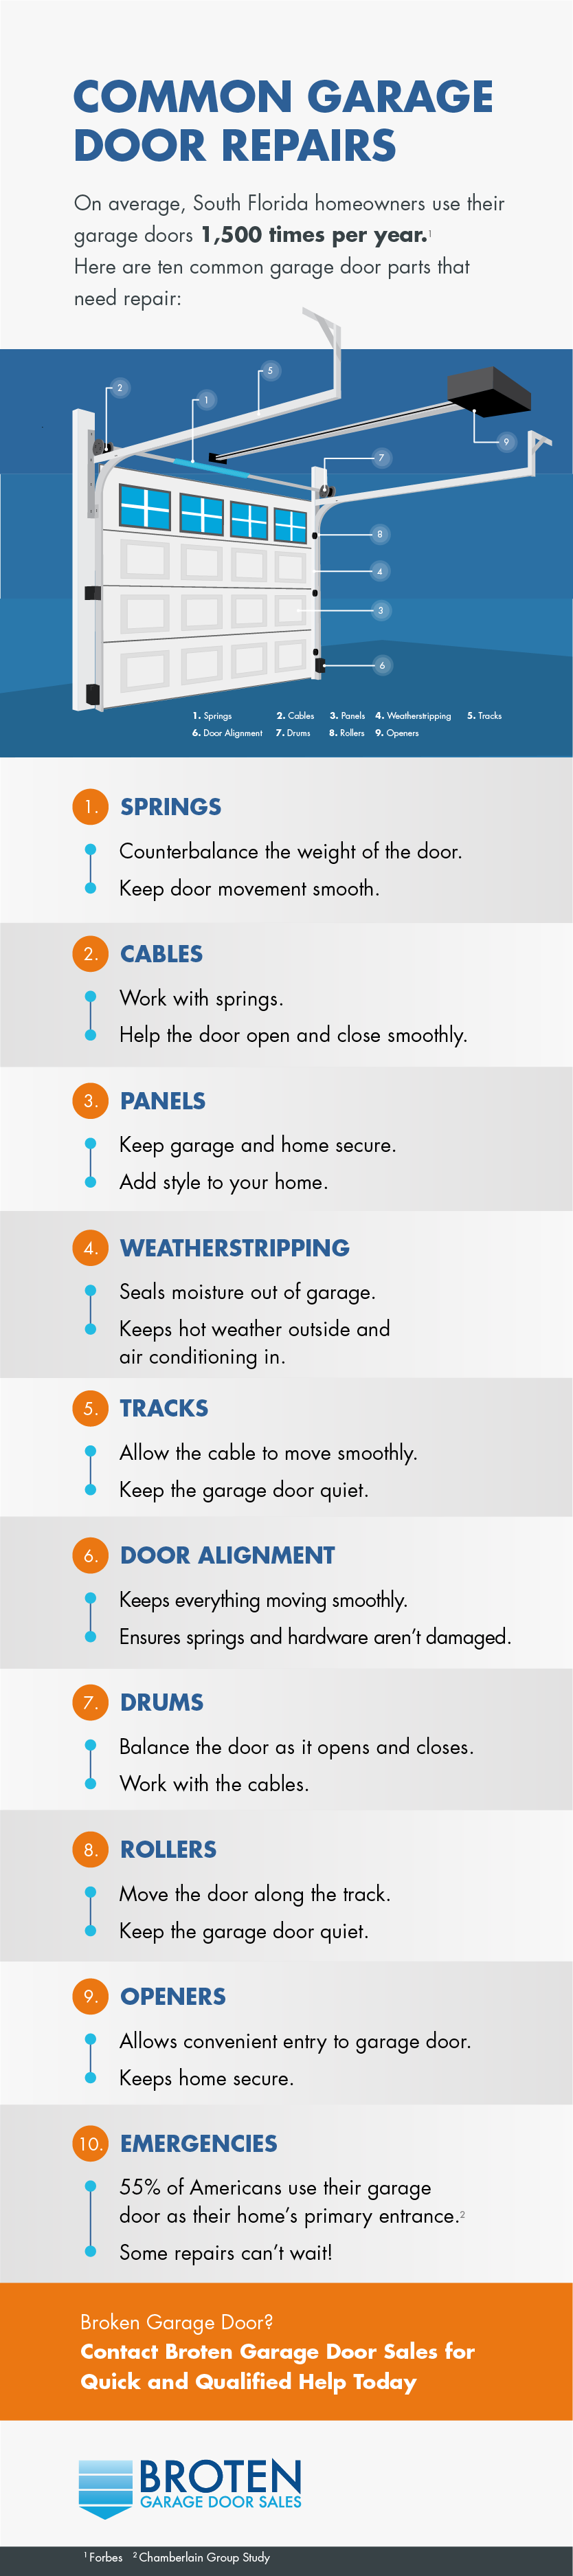 common garage door repairs